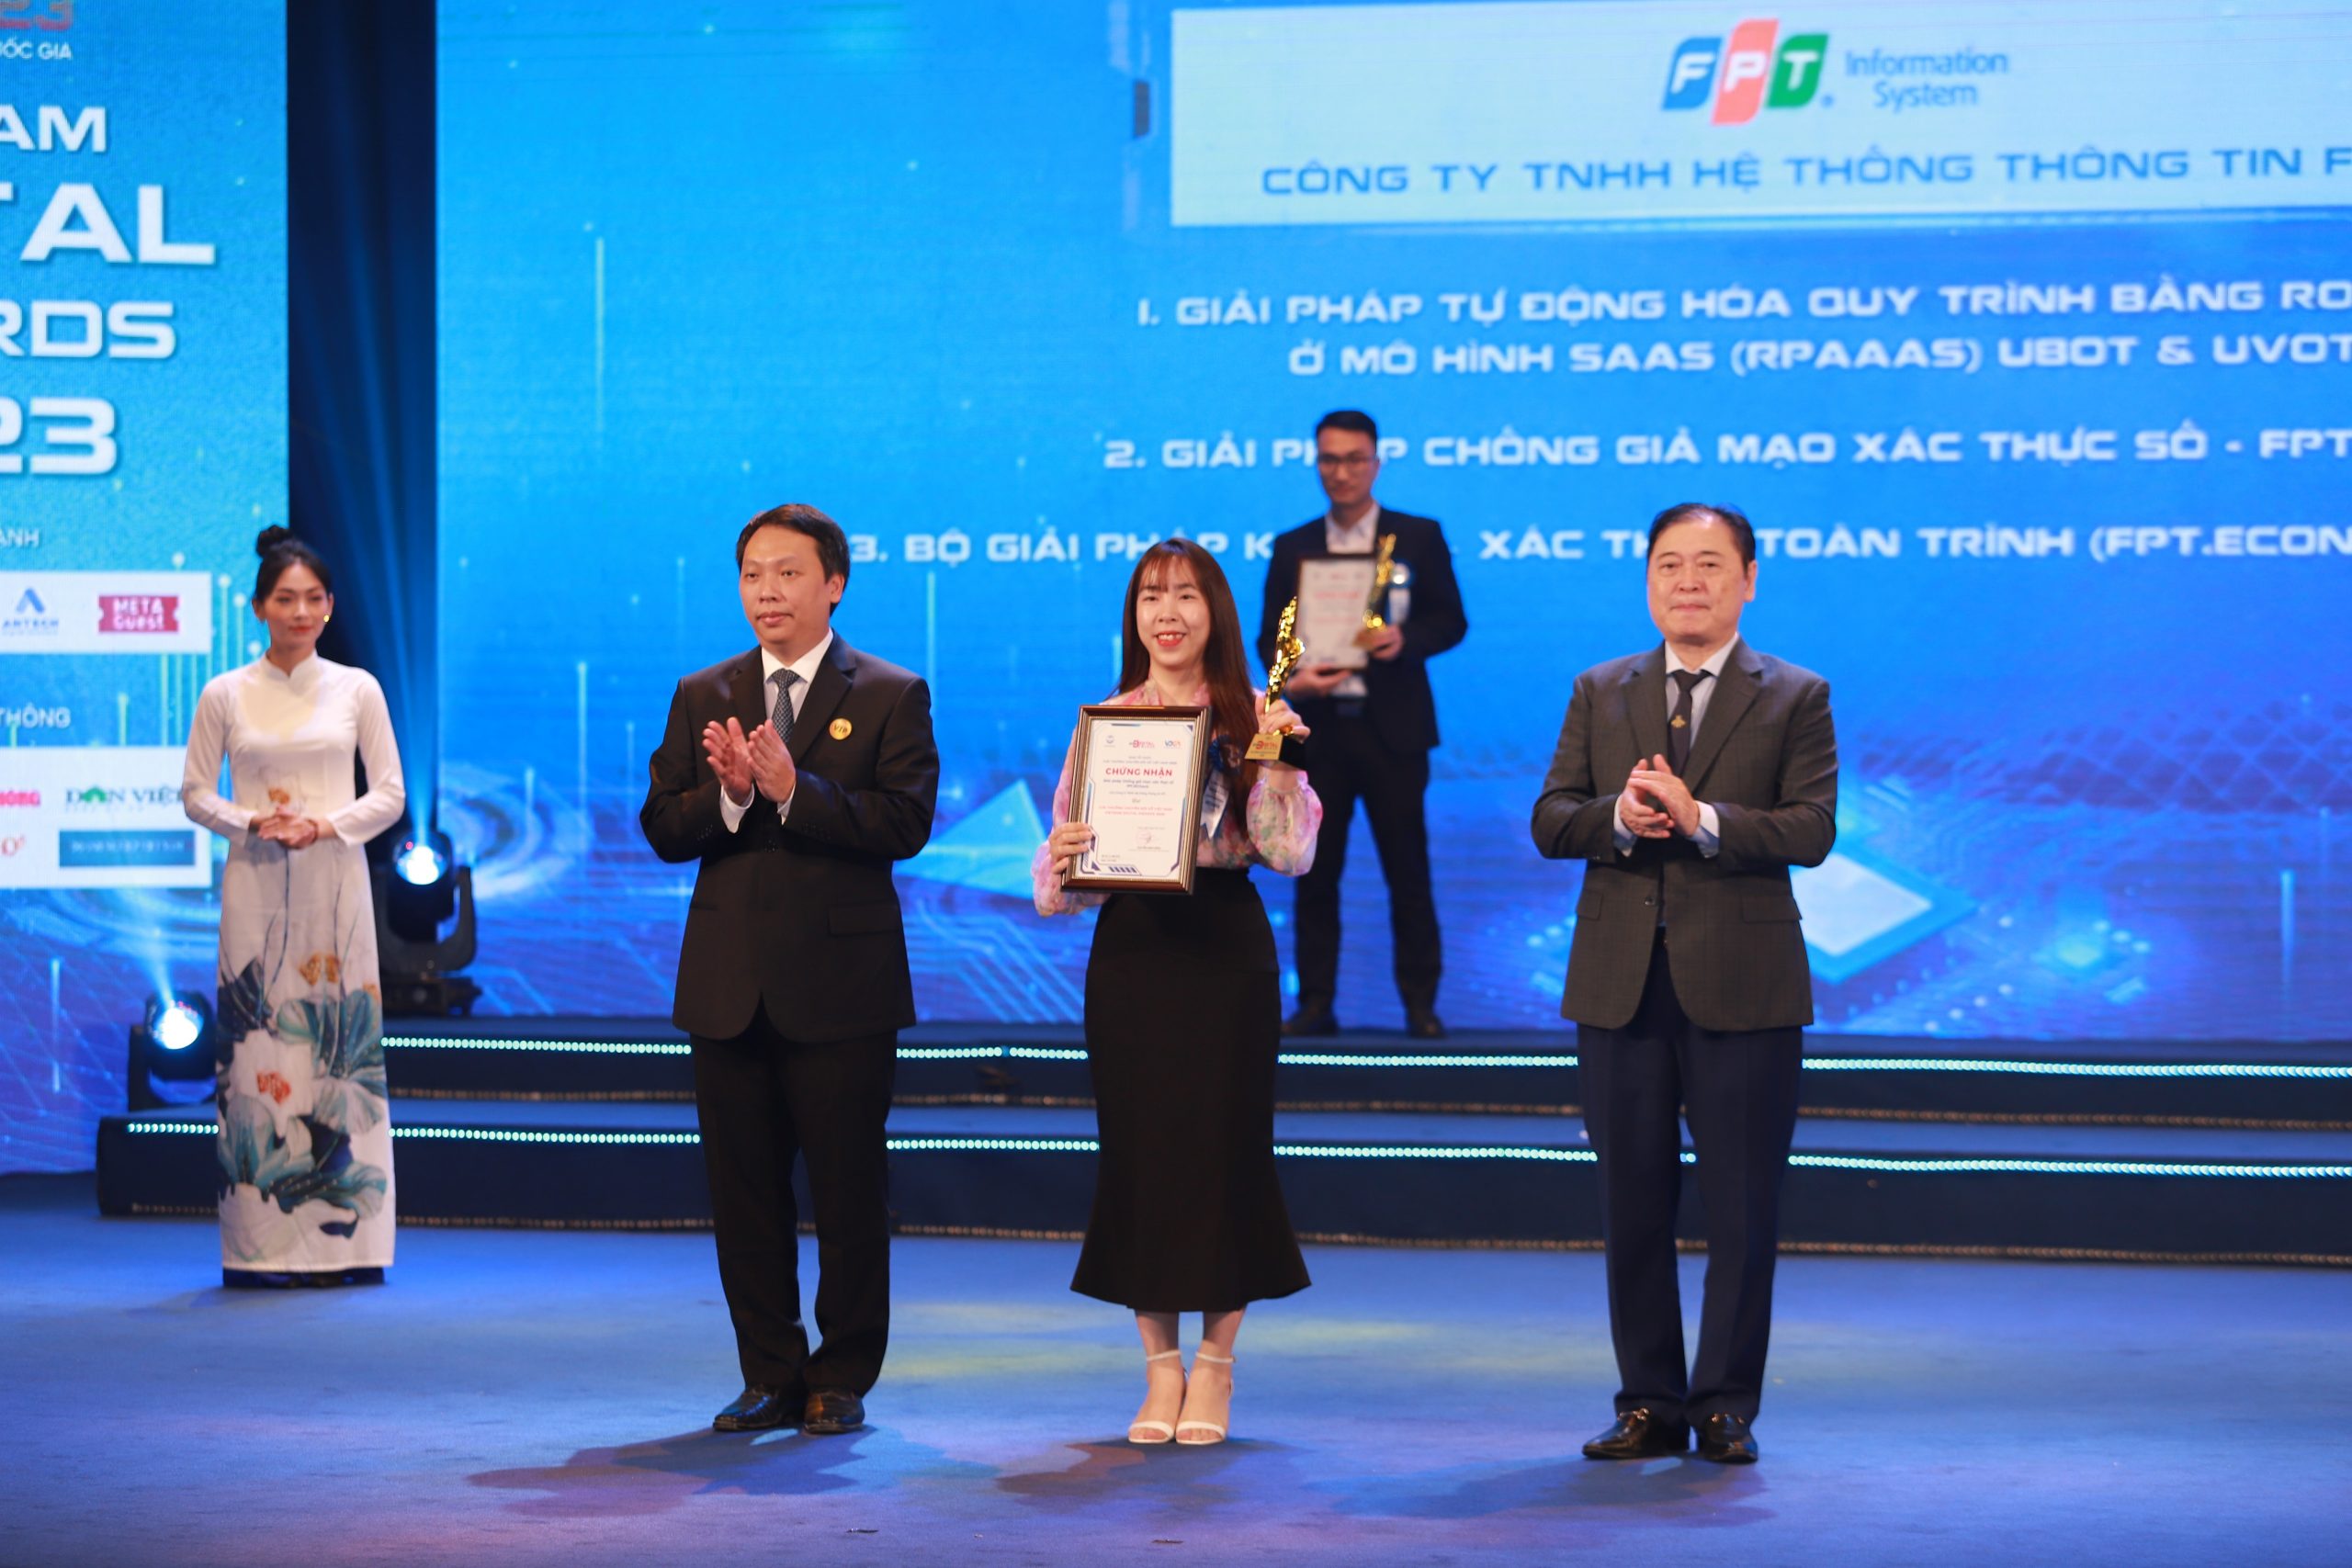 Bộ giải pháp ký kết – xác thực toàn trình (FPT.eContract & FPT.CeCA) đạt Giải thưởng Chuyển đổi số Việt Nam 2023